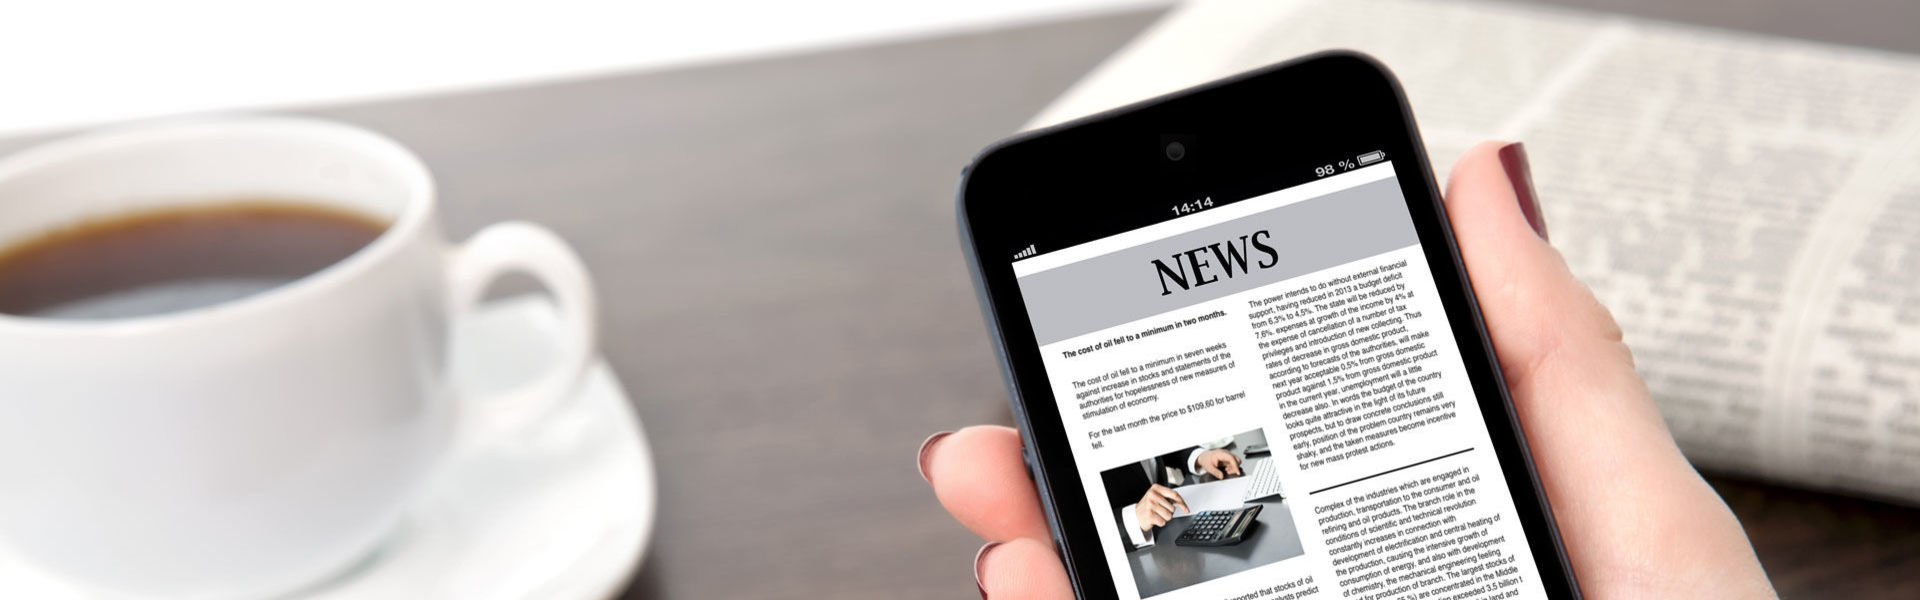 Abbildung eines iPhones und einer Zeitung mit Pressemeldungen von MENNEKES